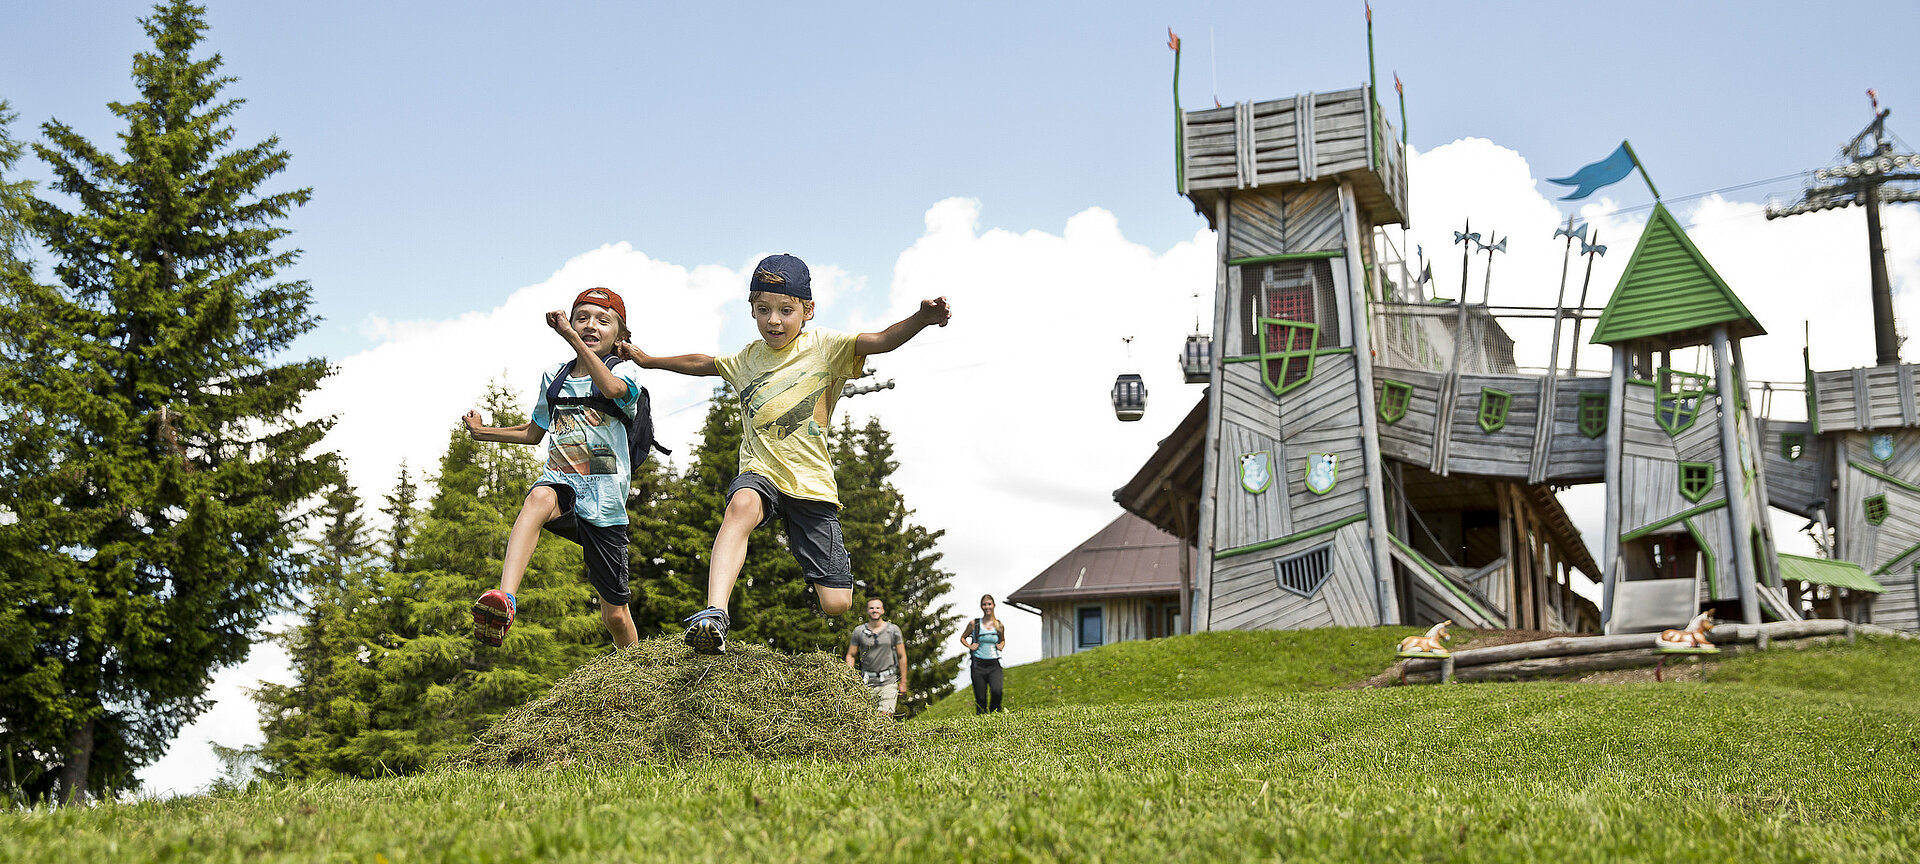 Kinder im Geisterdorf beim Geisterberg in Alpendorf am Gernkogel